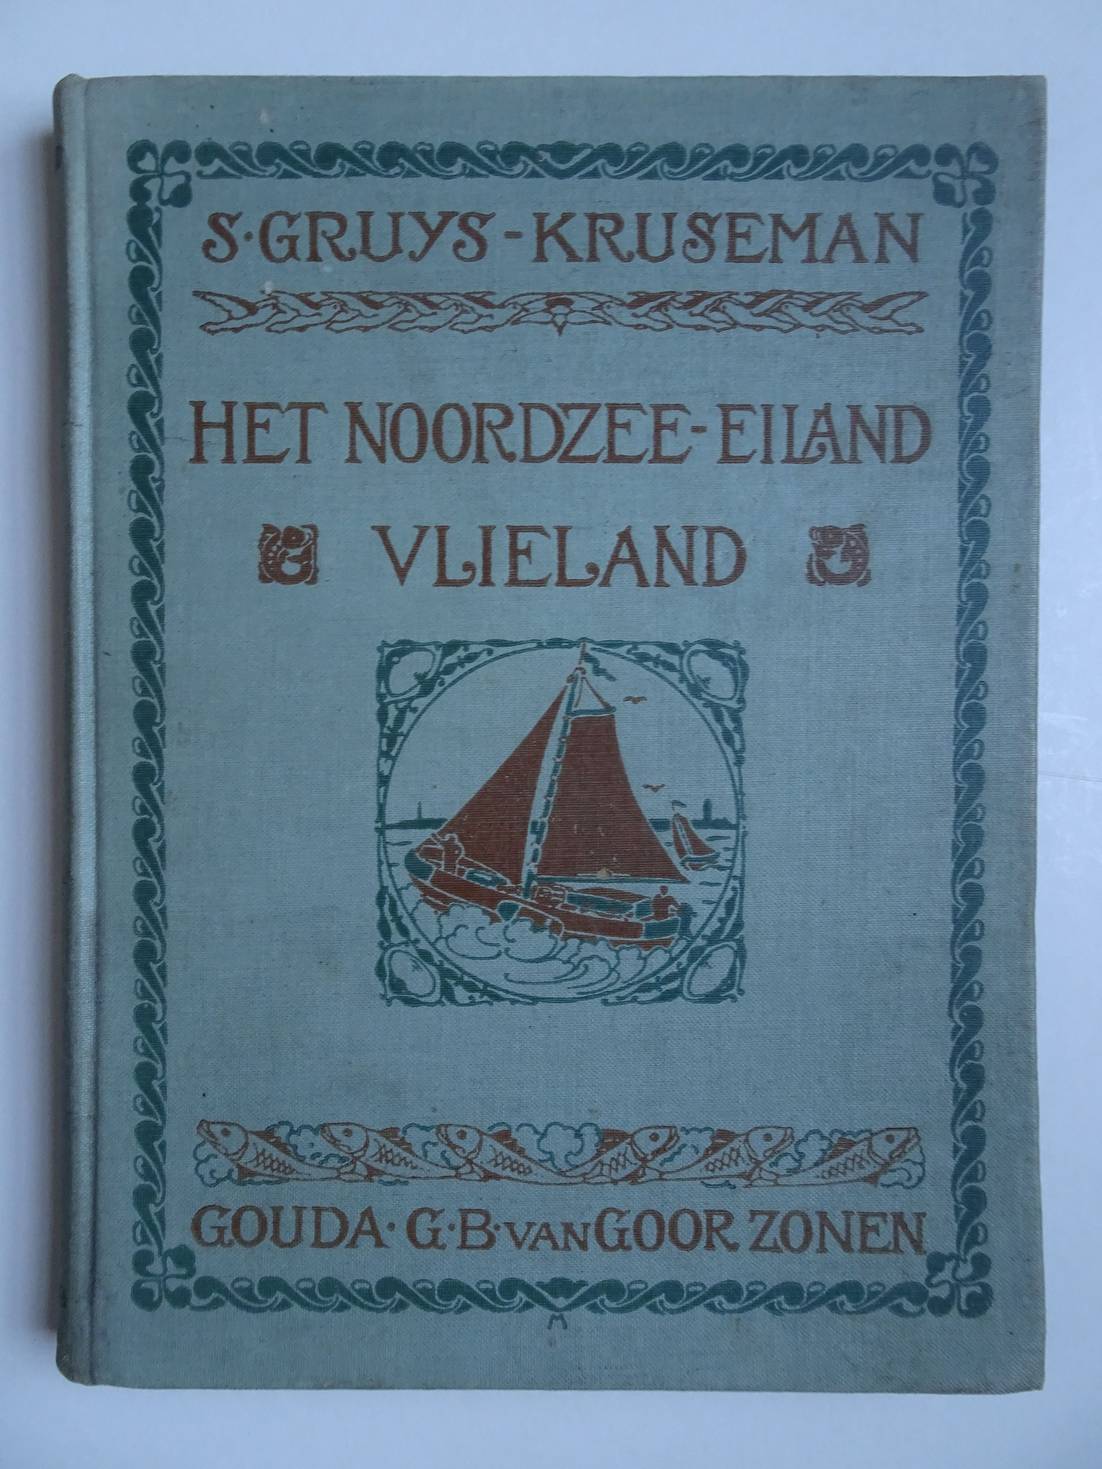 Gruys-Kruseman, S. - Het Noordzee-eiland (Vlieland). Een verhaal voor oud en jong.